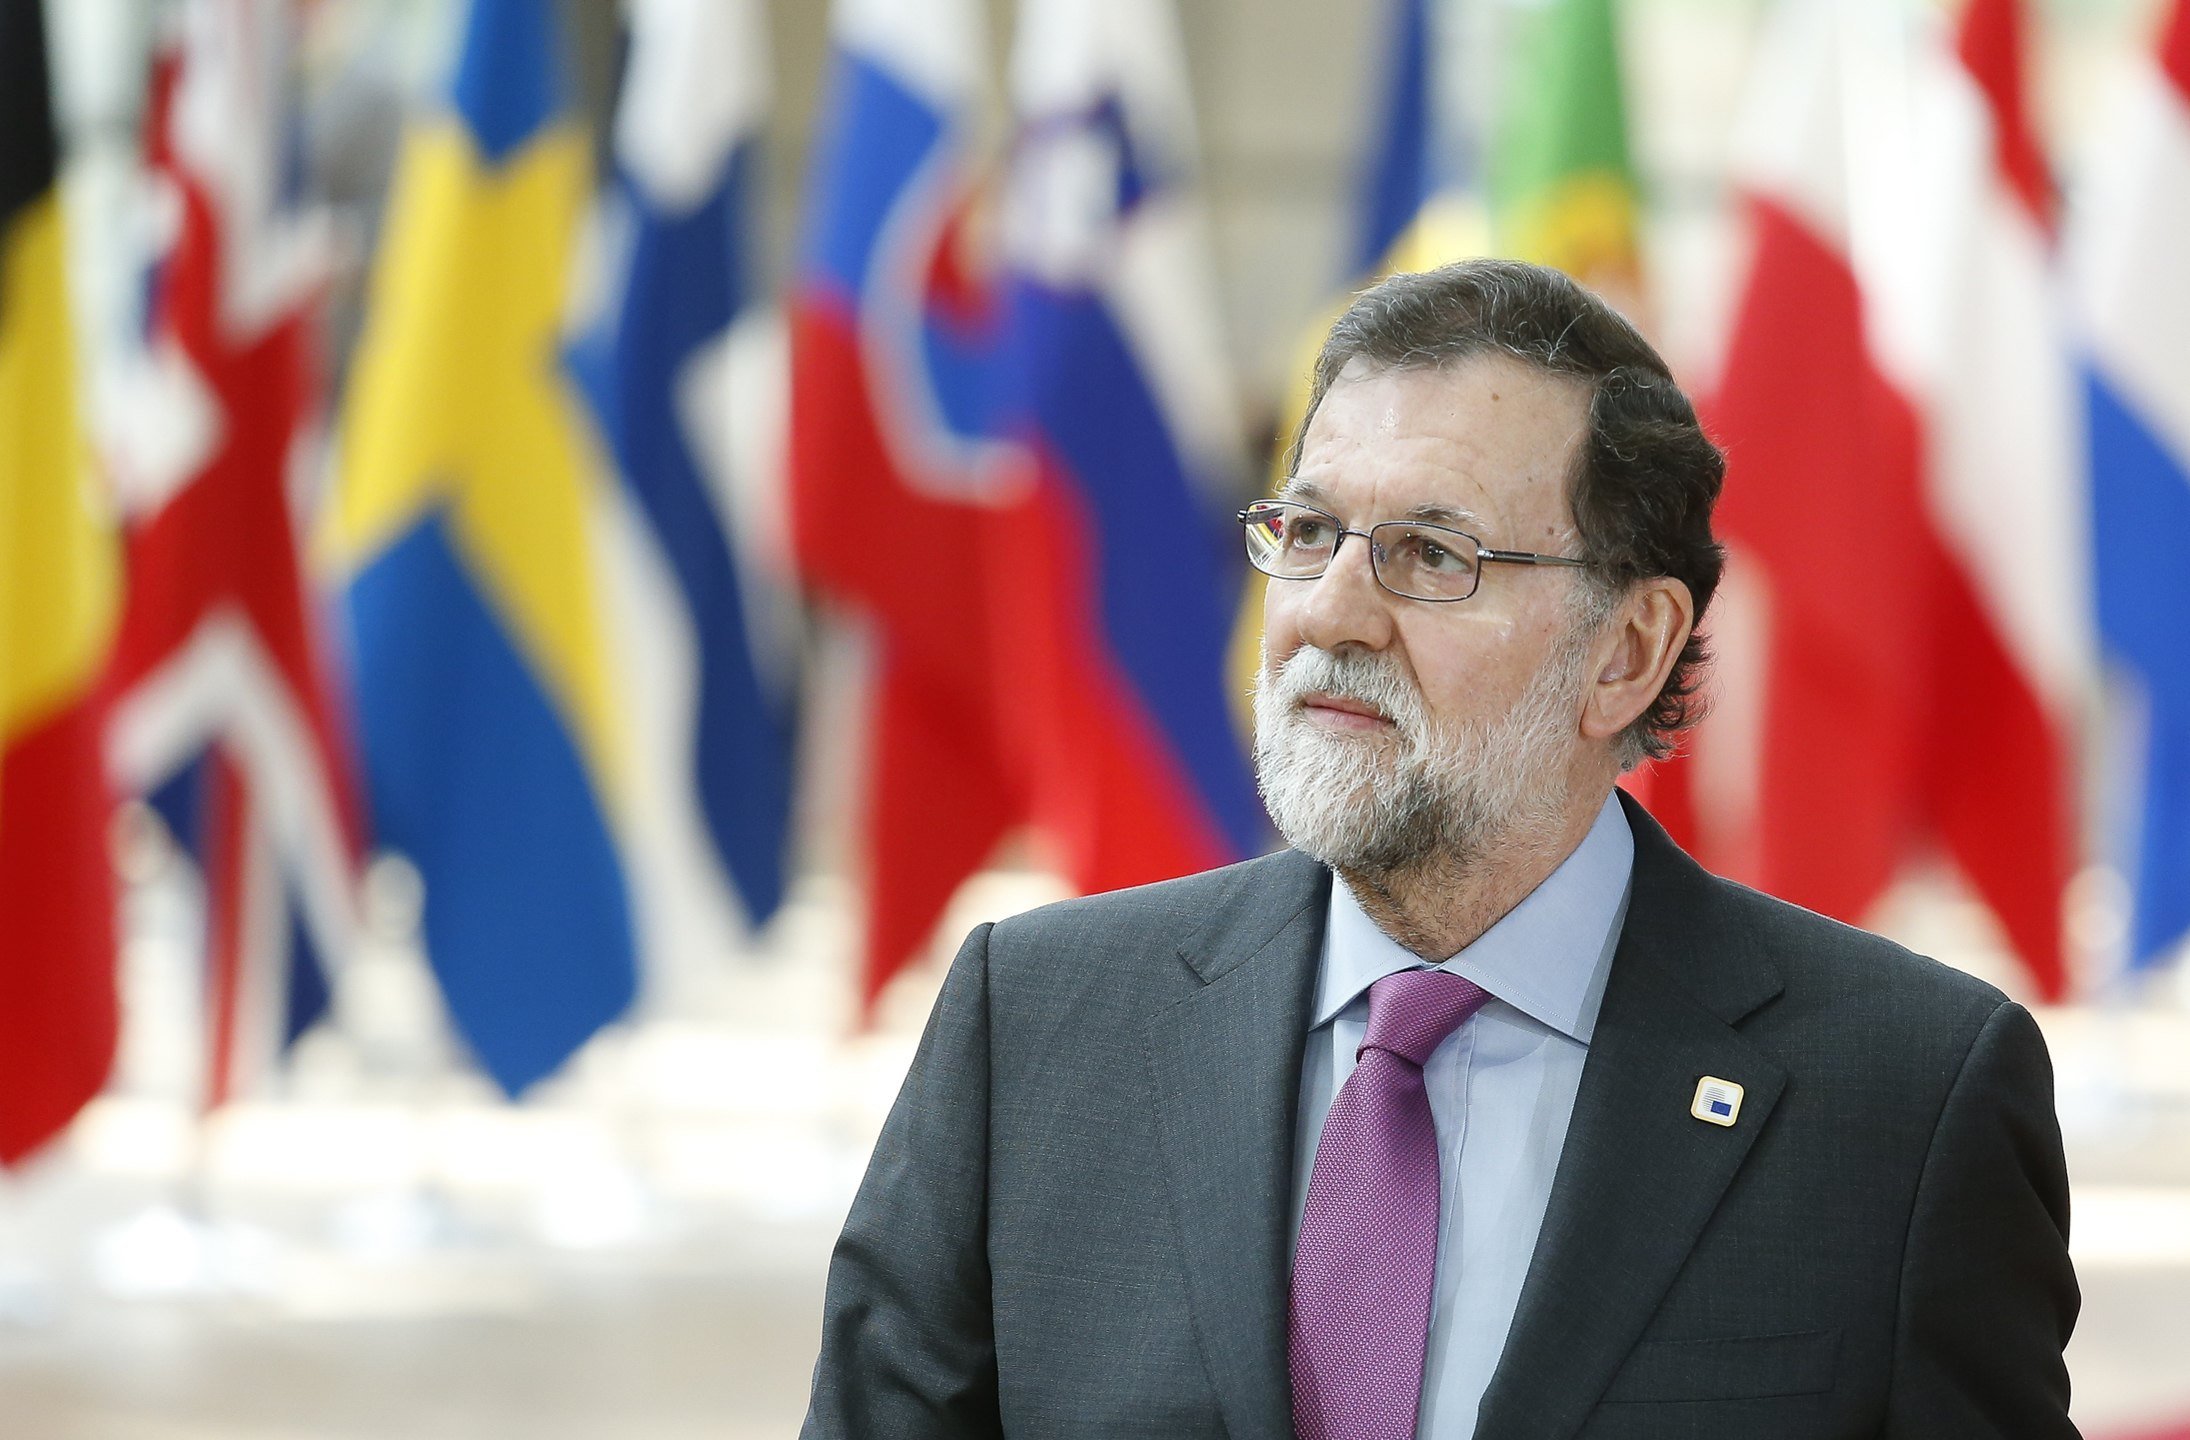 Rajoy se enroca: "Ni quiero ni puedo acceder a la petición de referéndum"